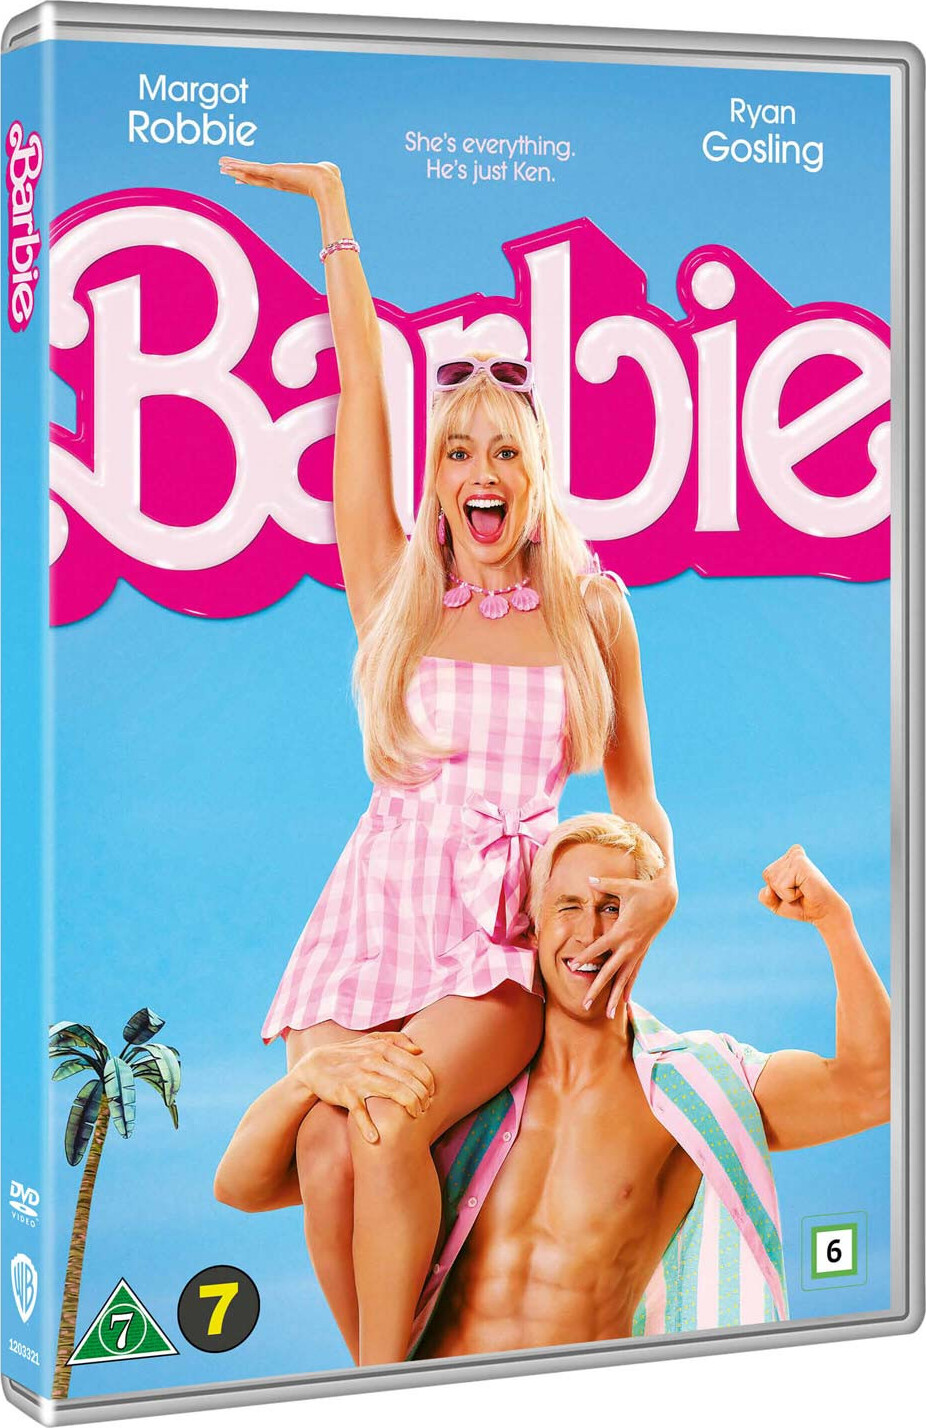 Bedste Barbie Dvd i 2023